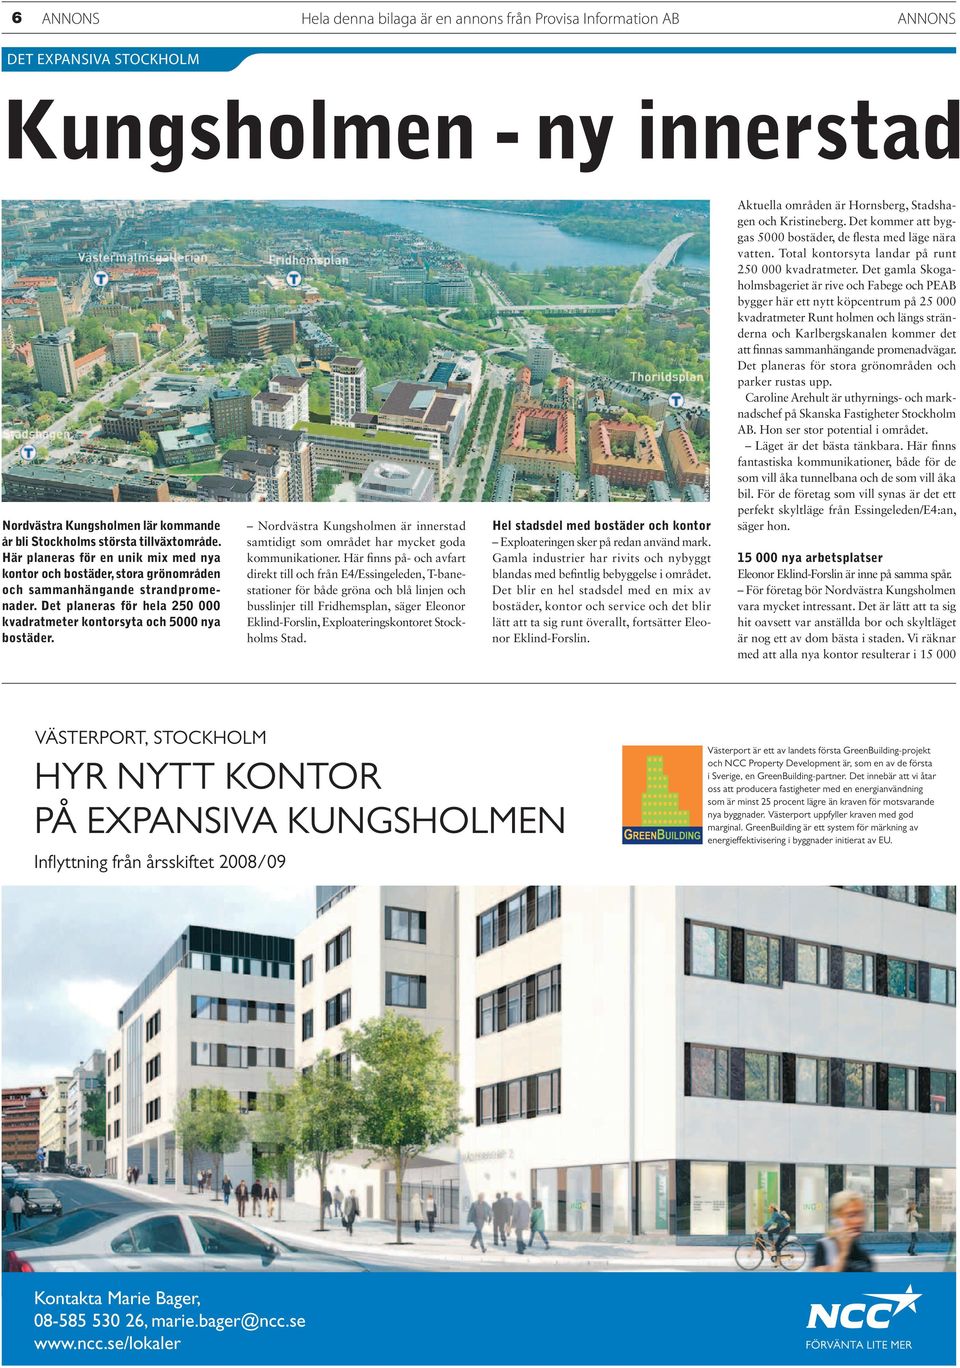 Det planeras för hela 250 000 kvadratmeter kontorsyta och 5000 nya bostäder. Nordvästra Kungsholmen är innerstad samtidigt som området har mycket goda kommunikationer.